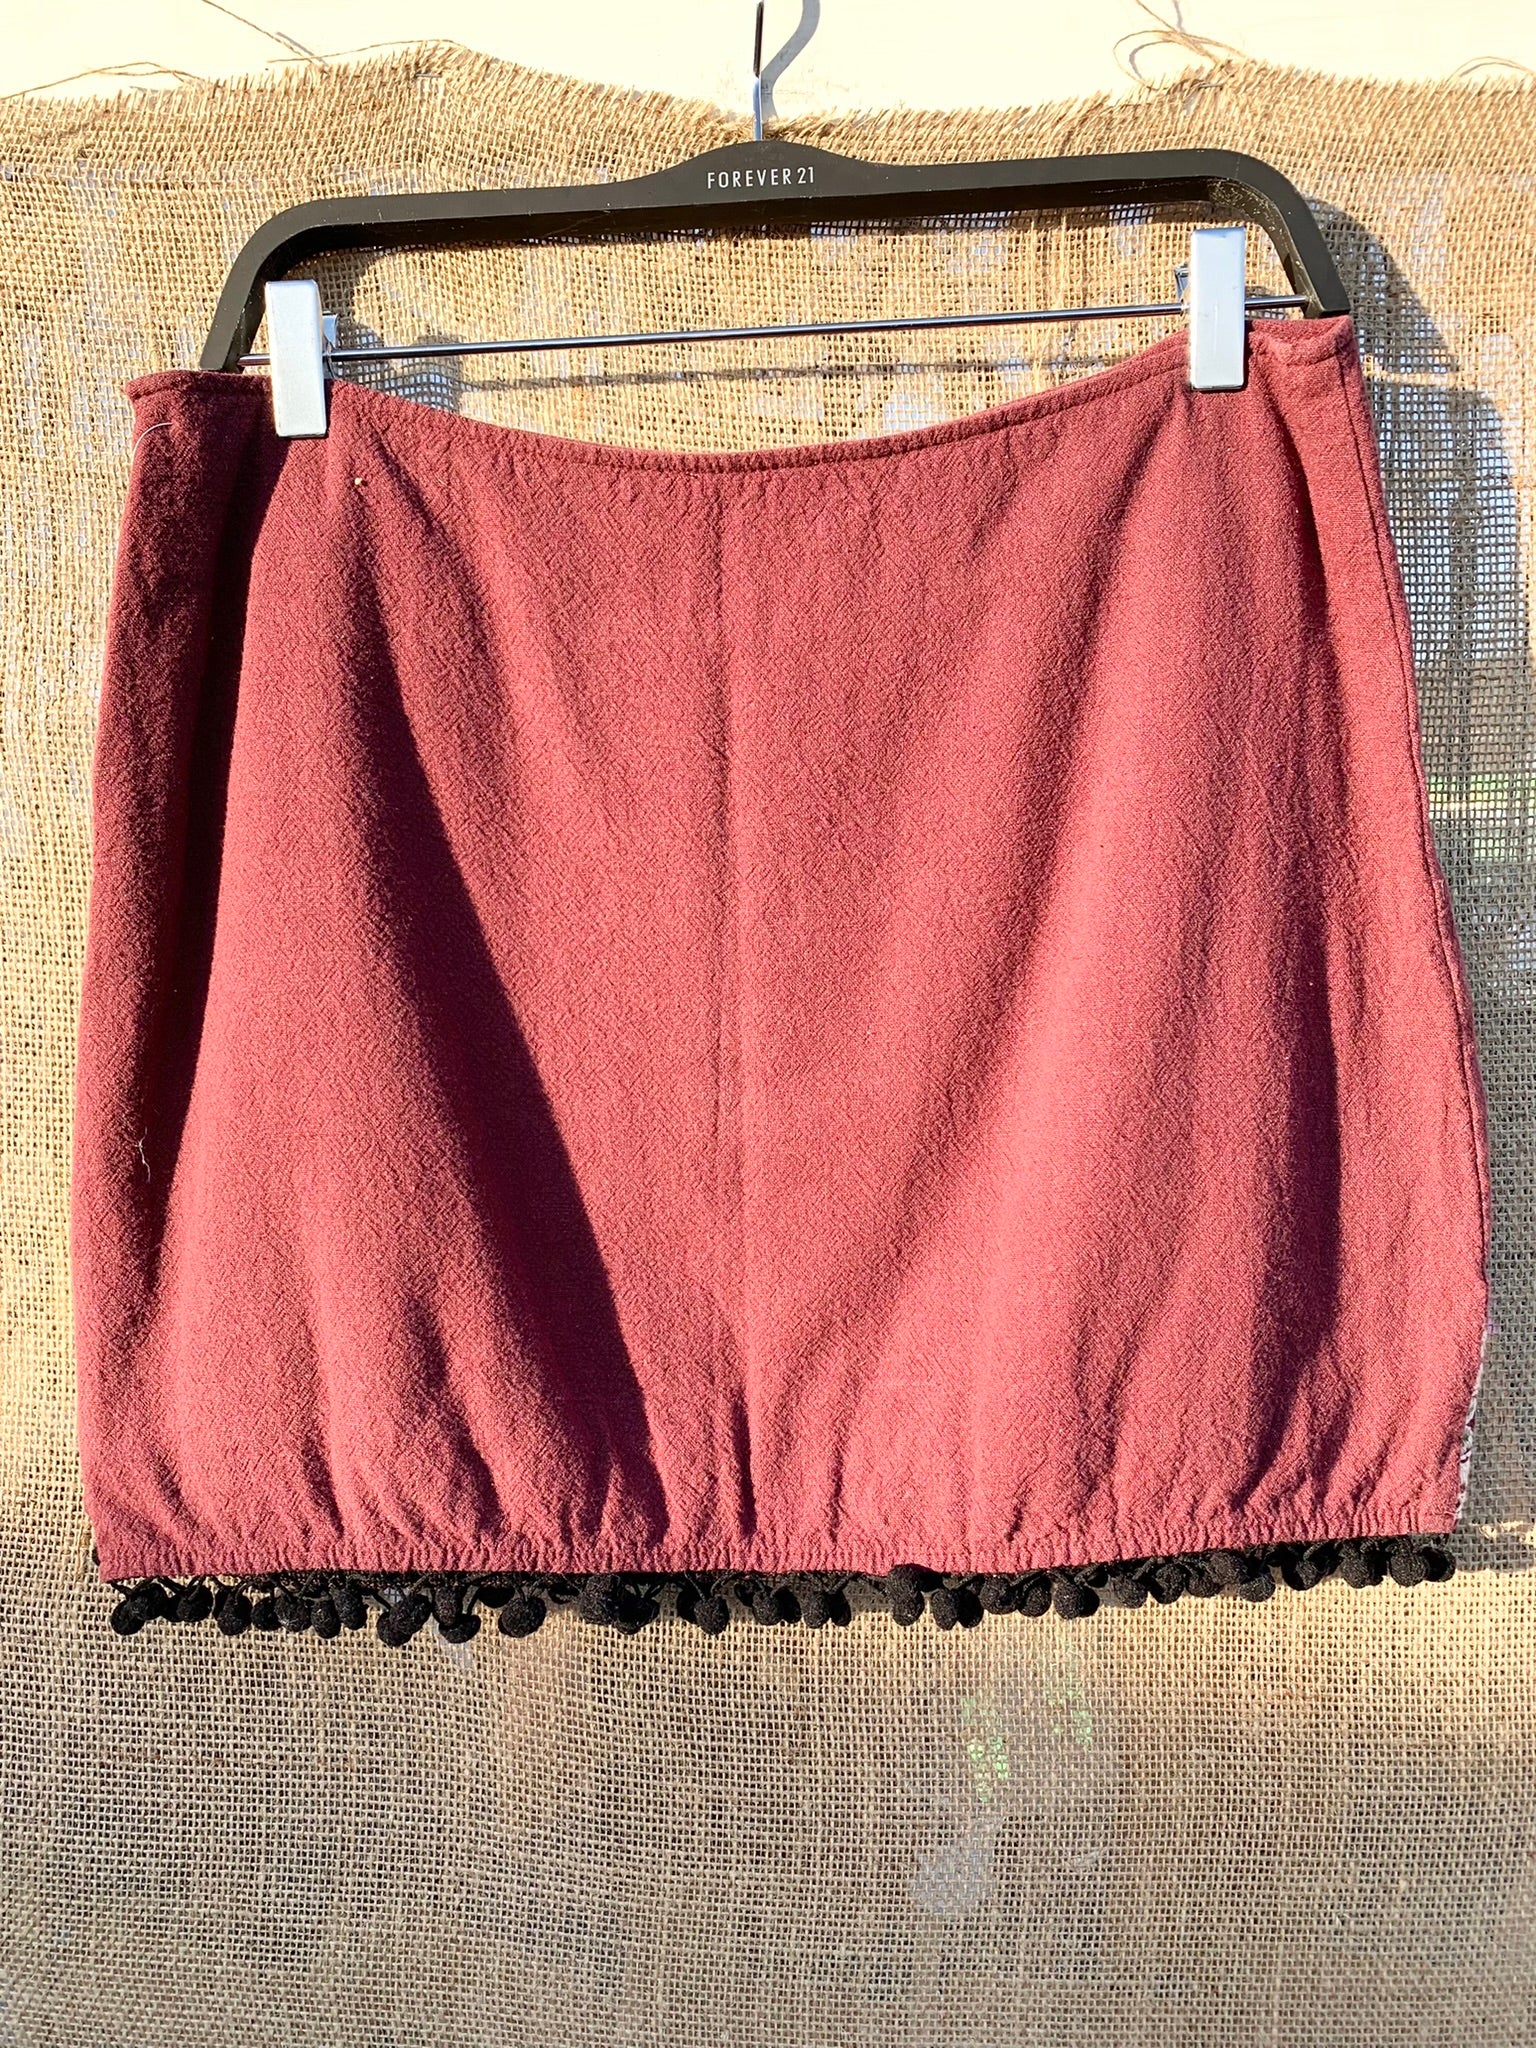 Forever 21 Denim Mini Skirt Red from Forever 21 on 21 Buttons